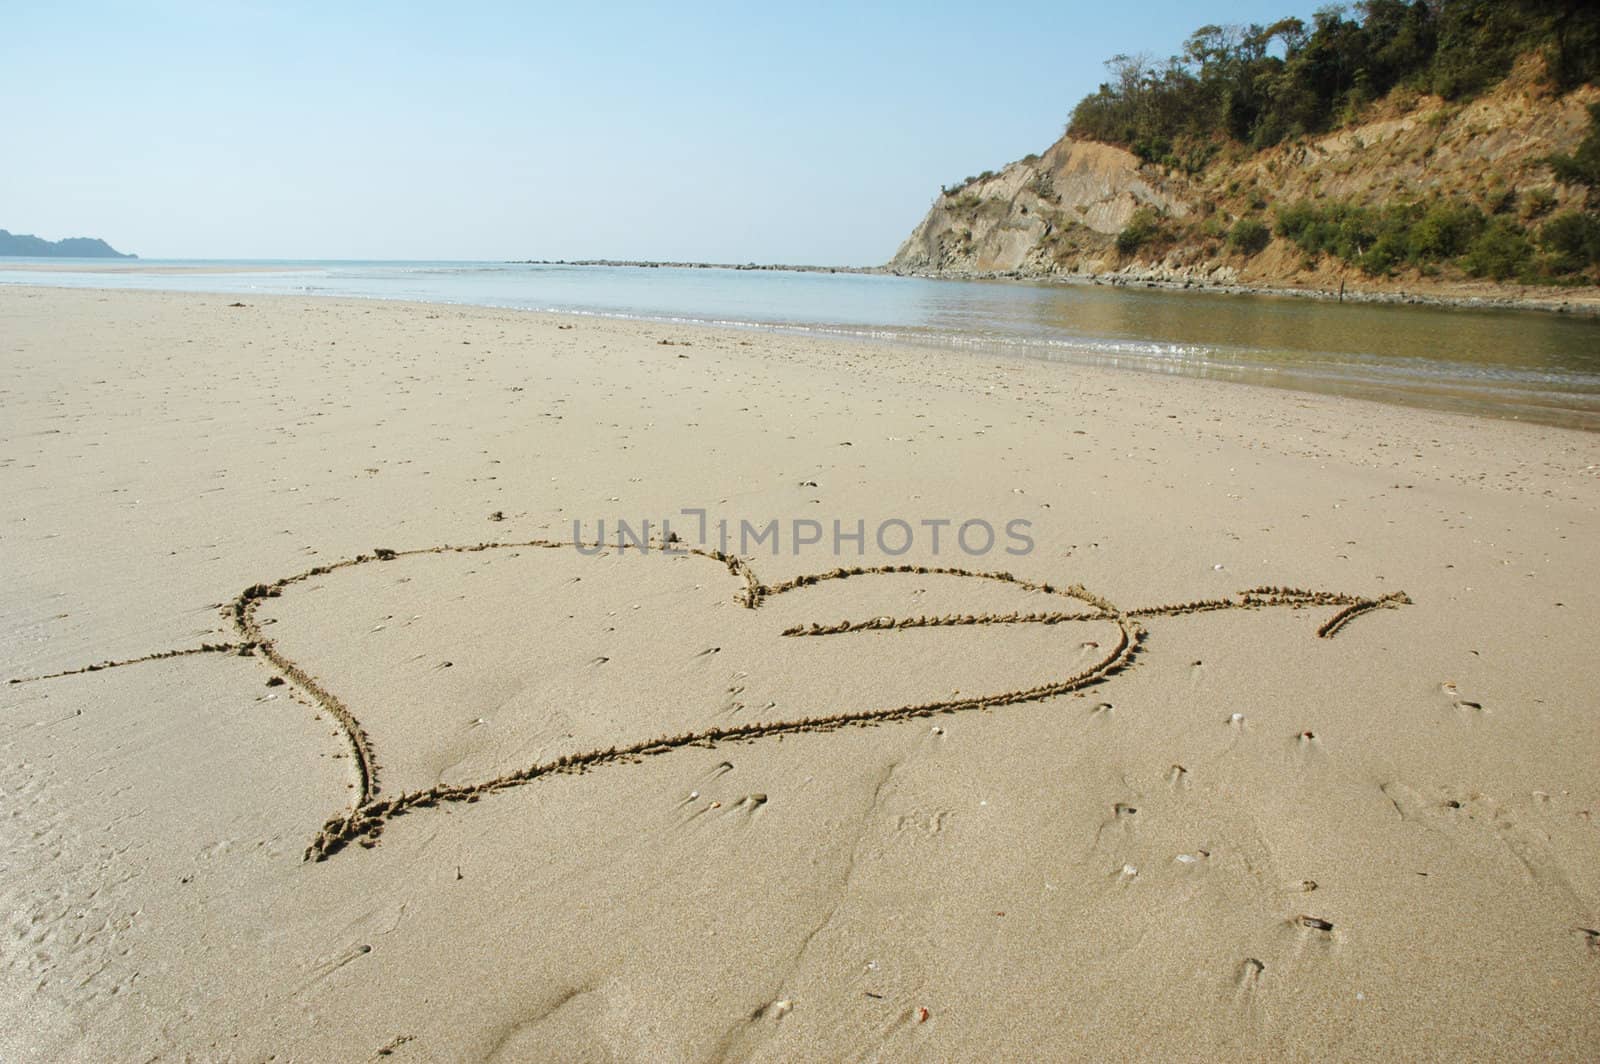 Heart with arrow on a beach by khwi